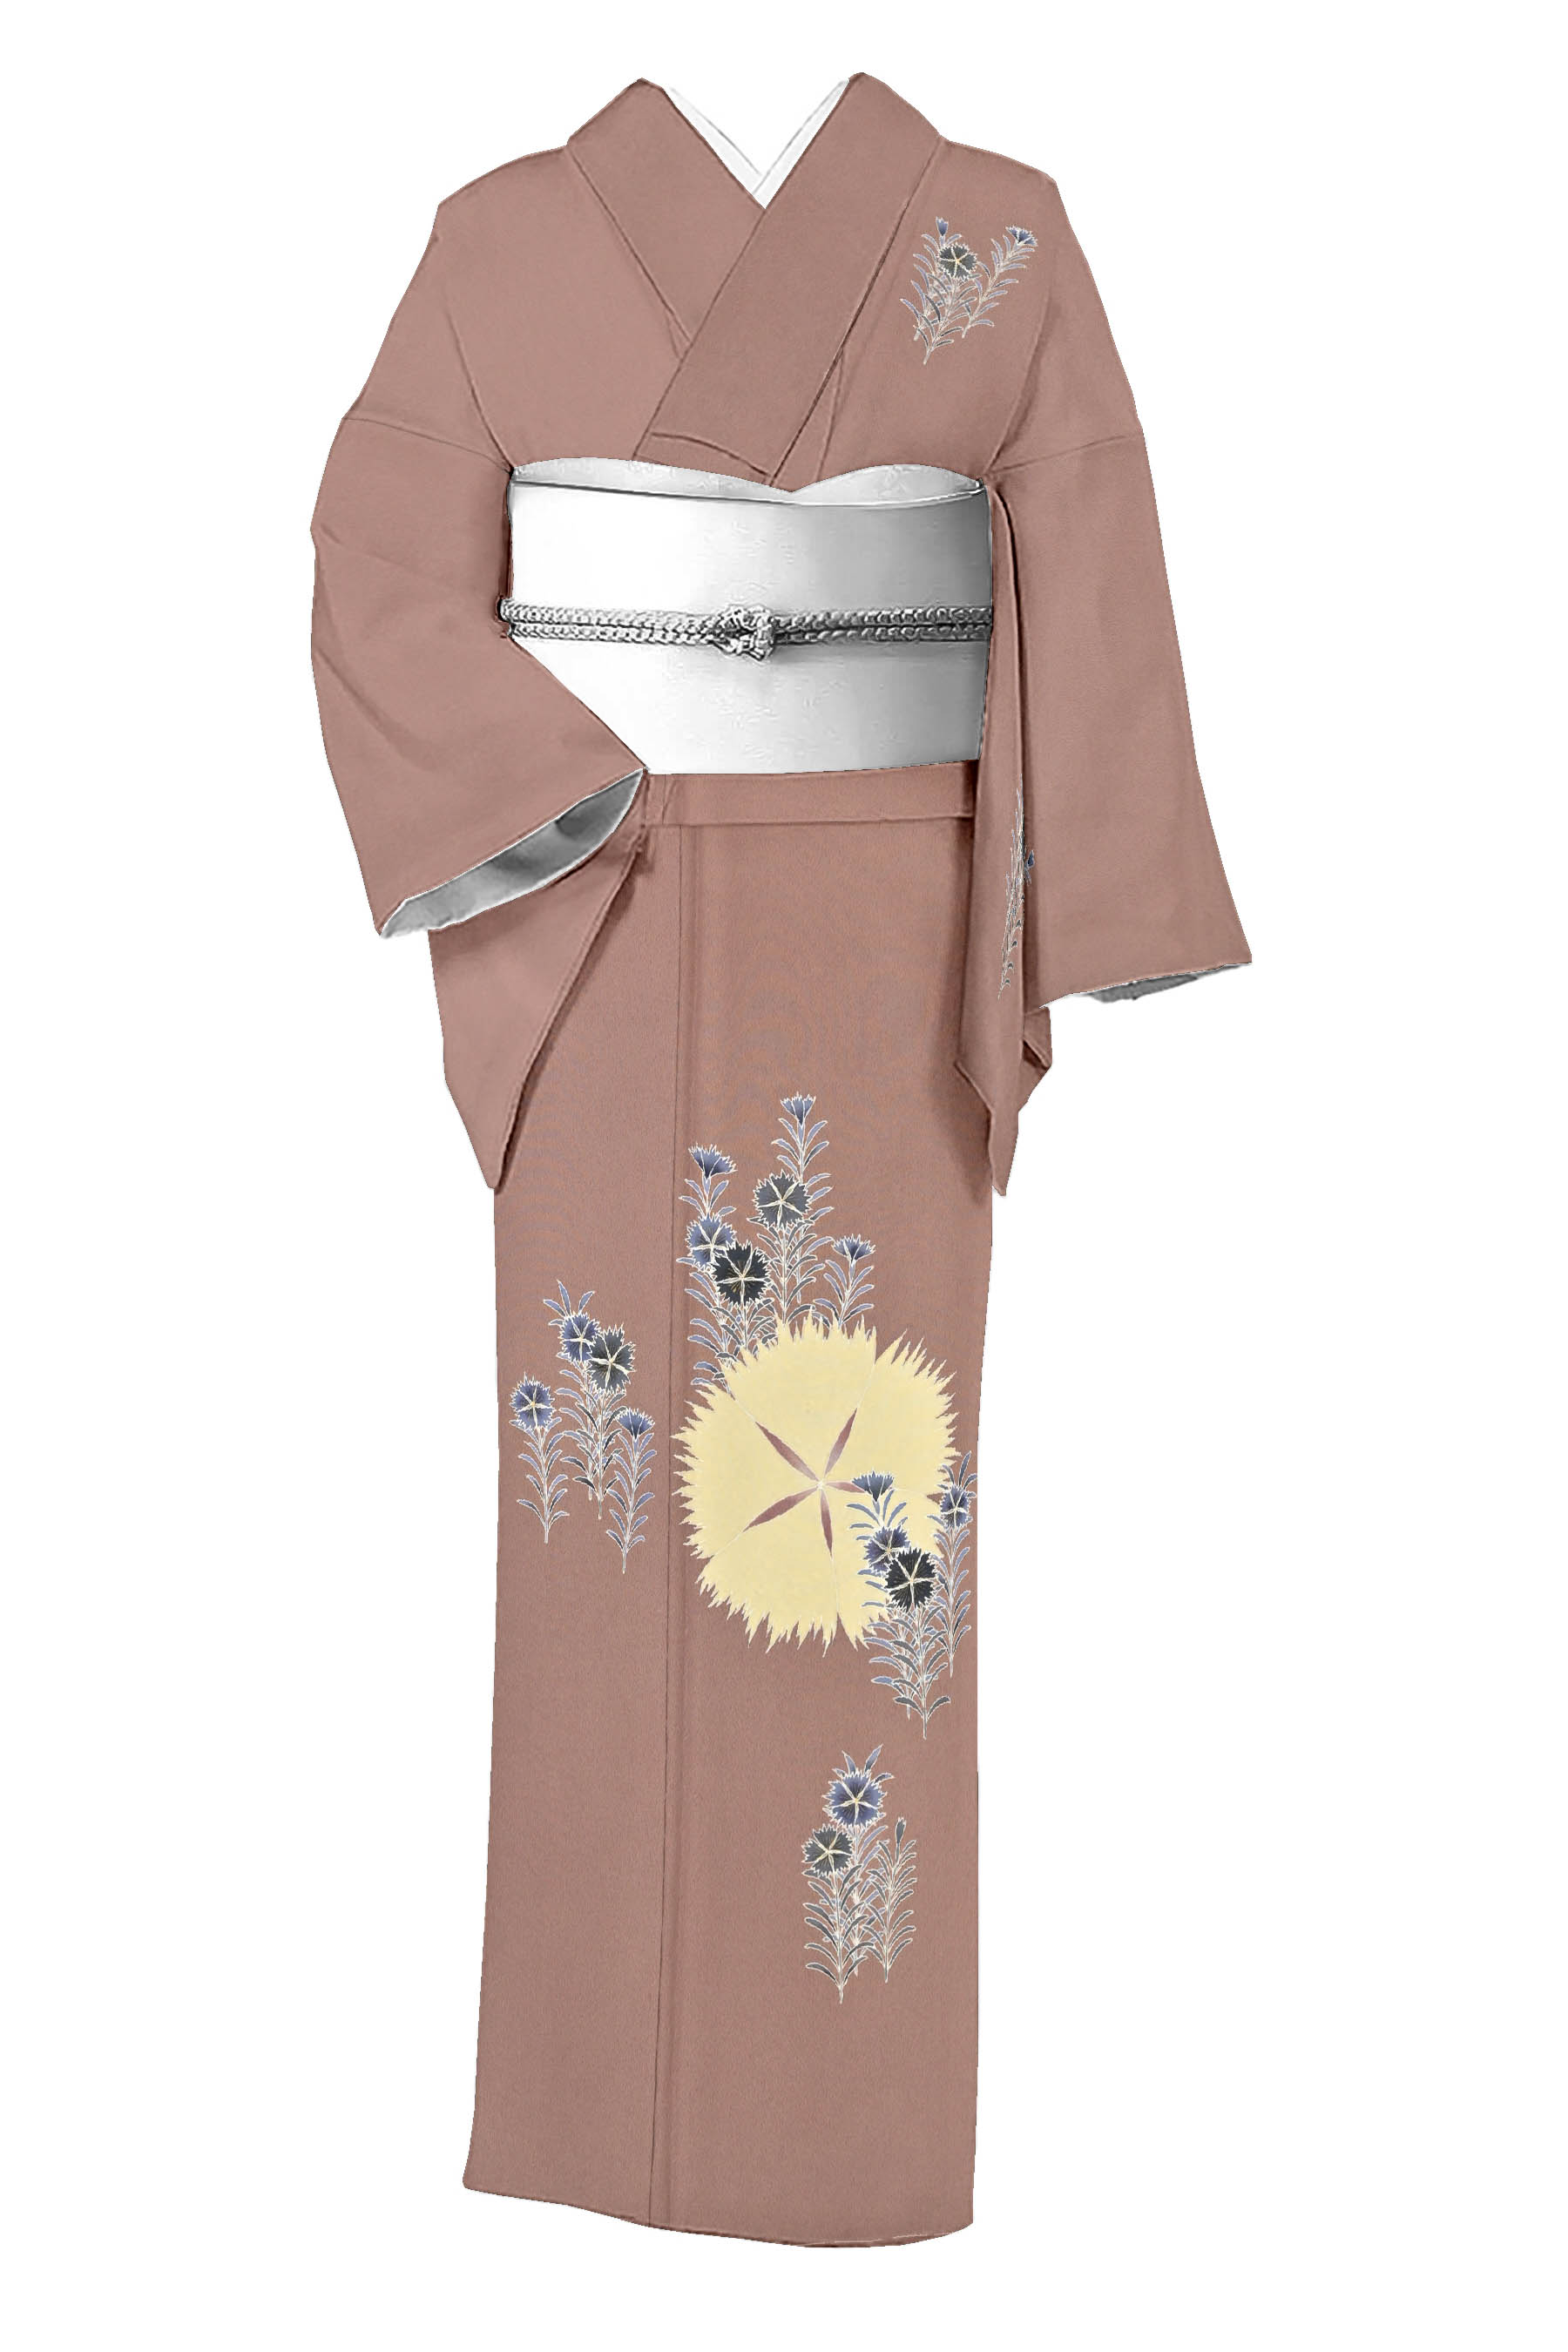 上野為二の着物・帯の一覧|京都きもの市場【日本最大級の着物通販サイト】